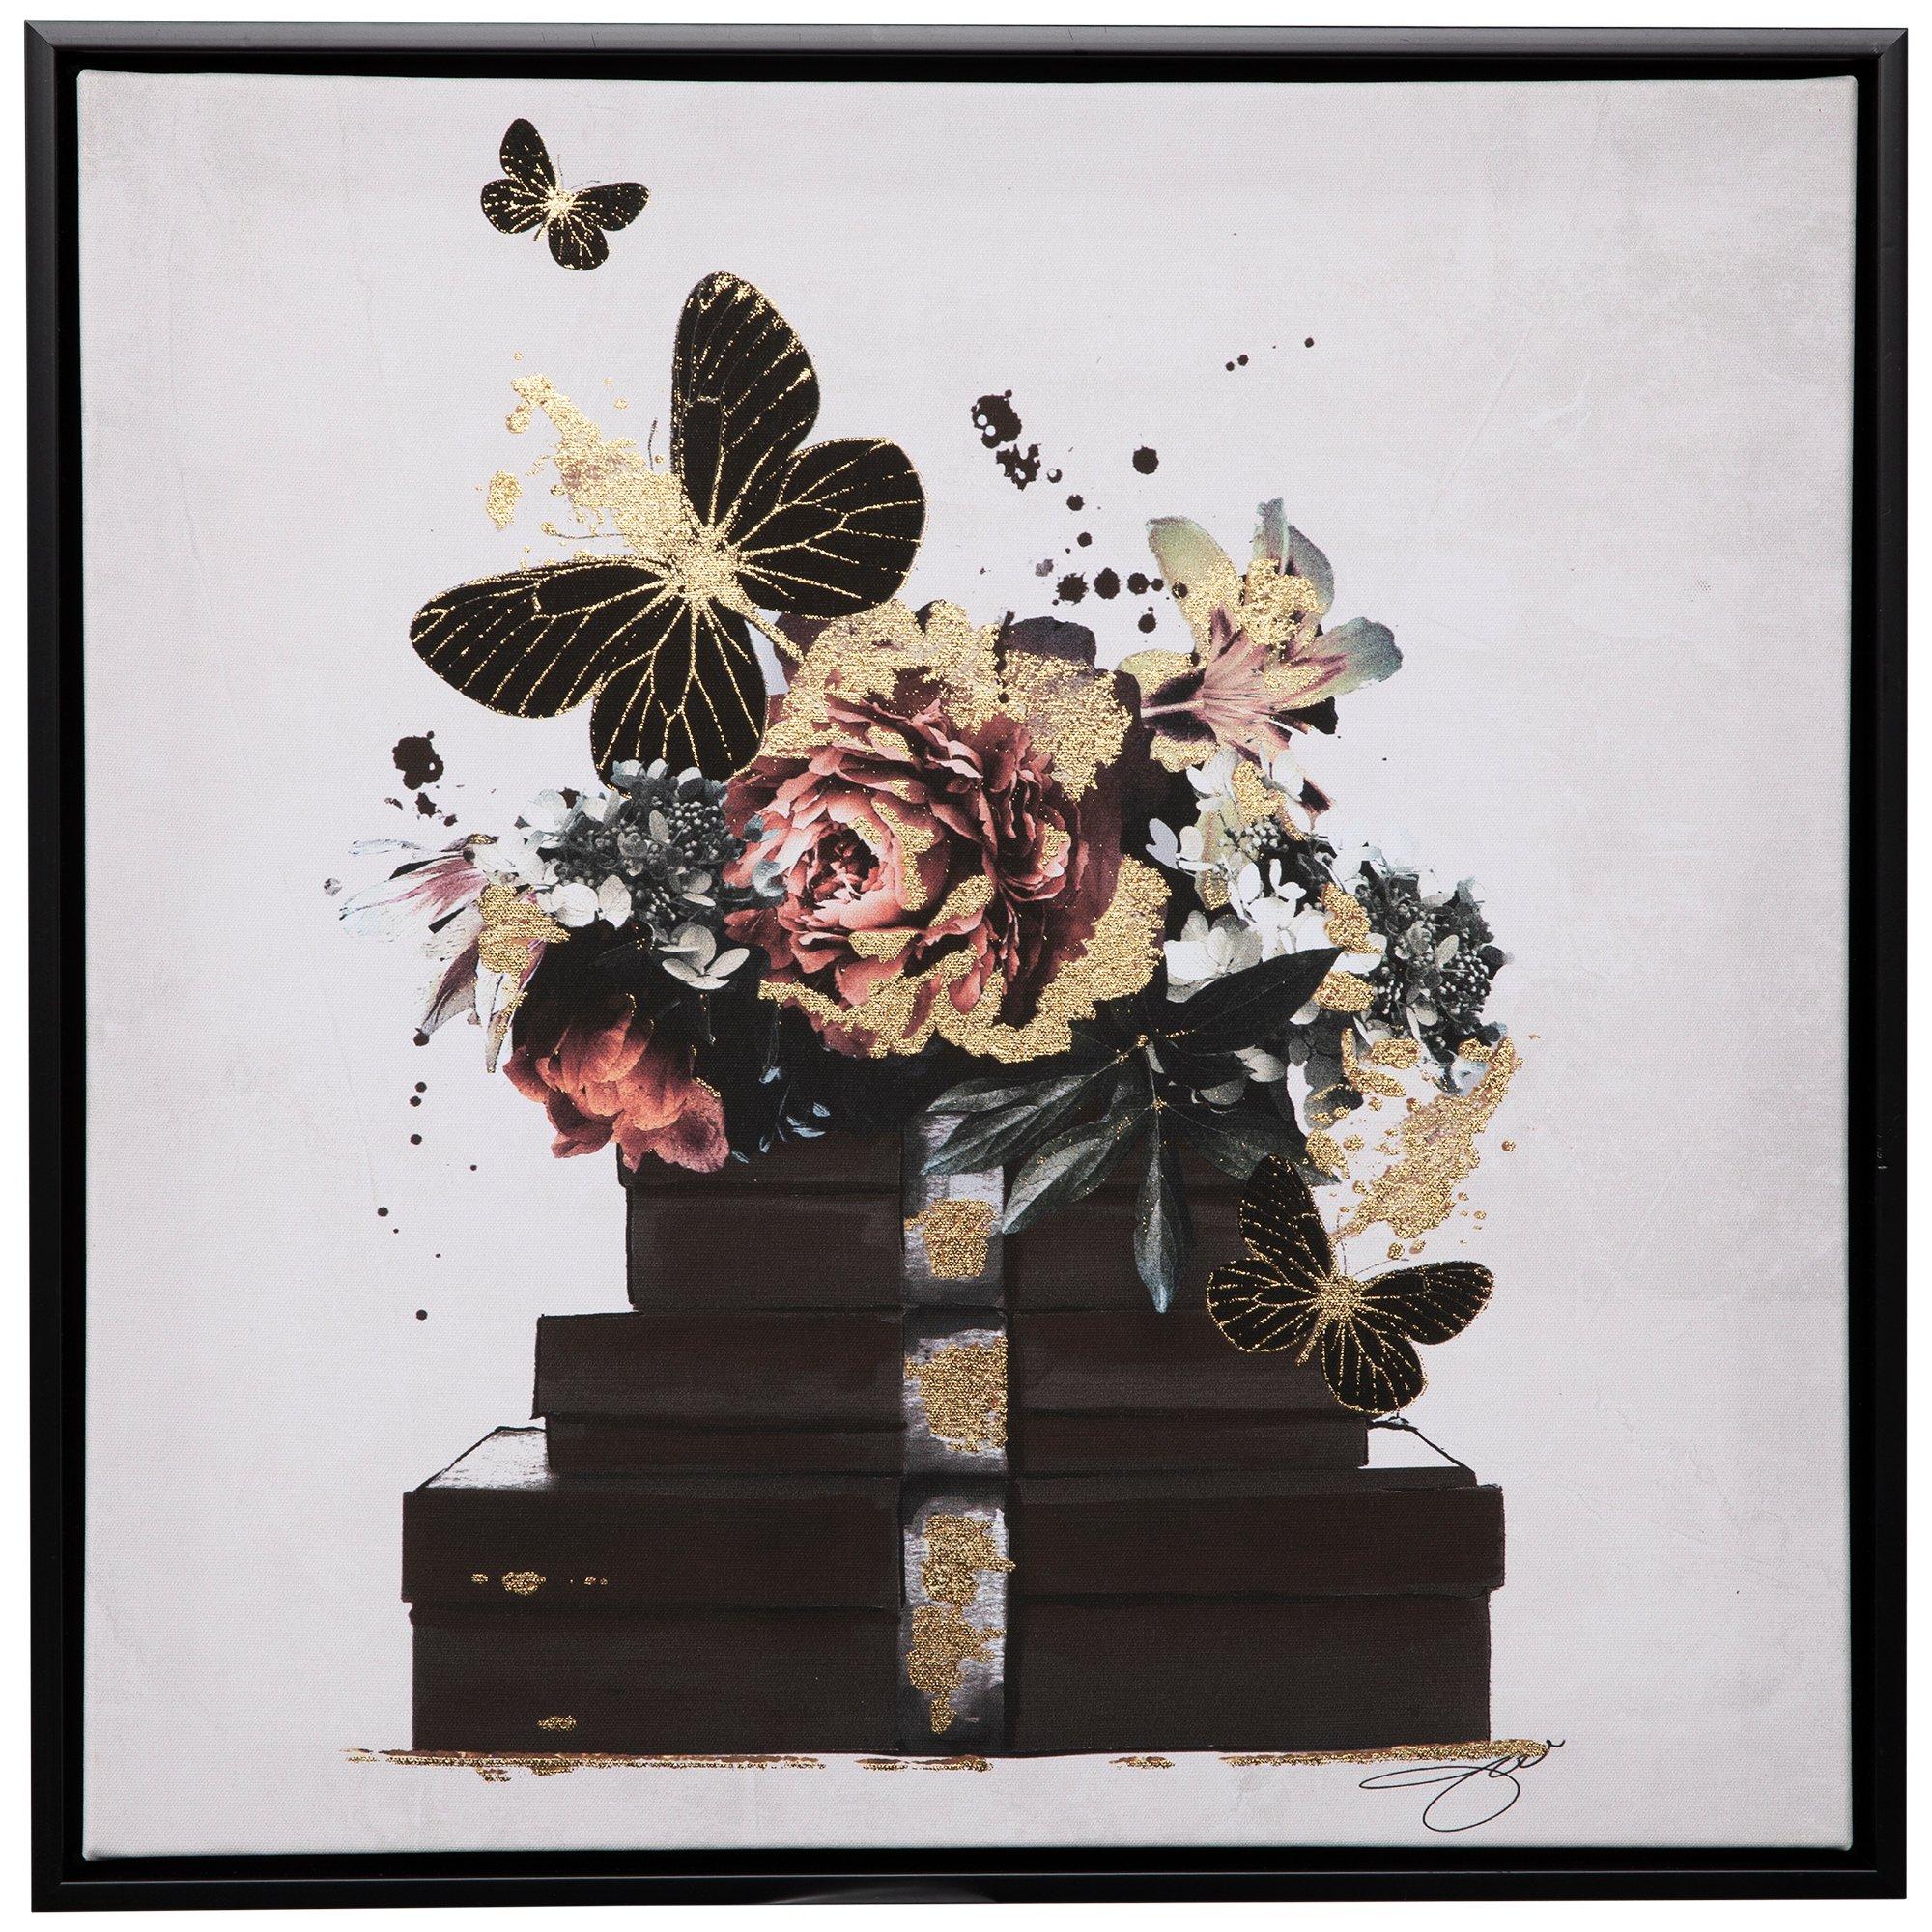 Flower & Butterfly Bead Kit, Hobby Lobby